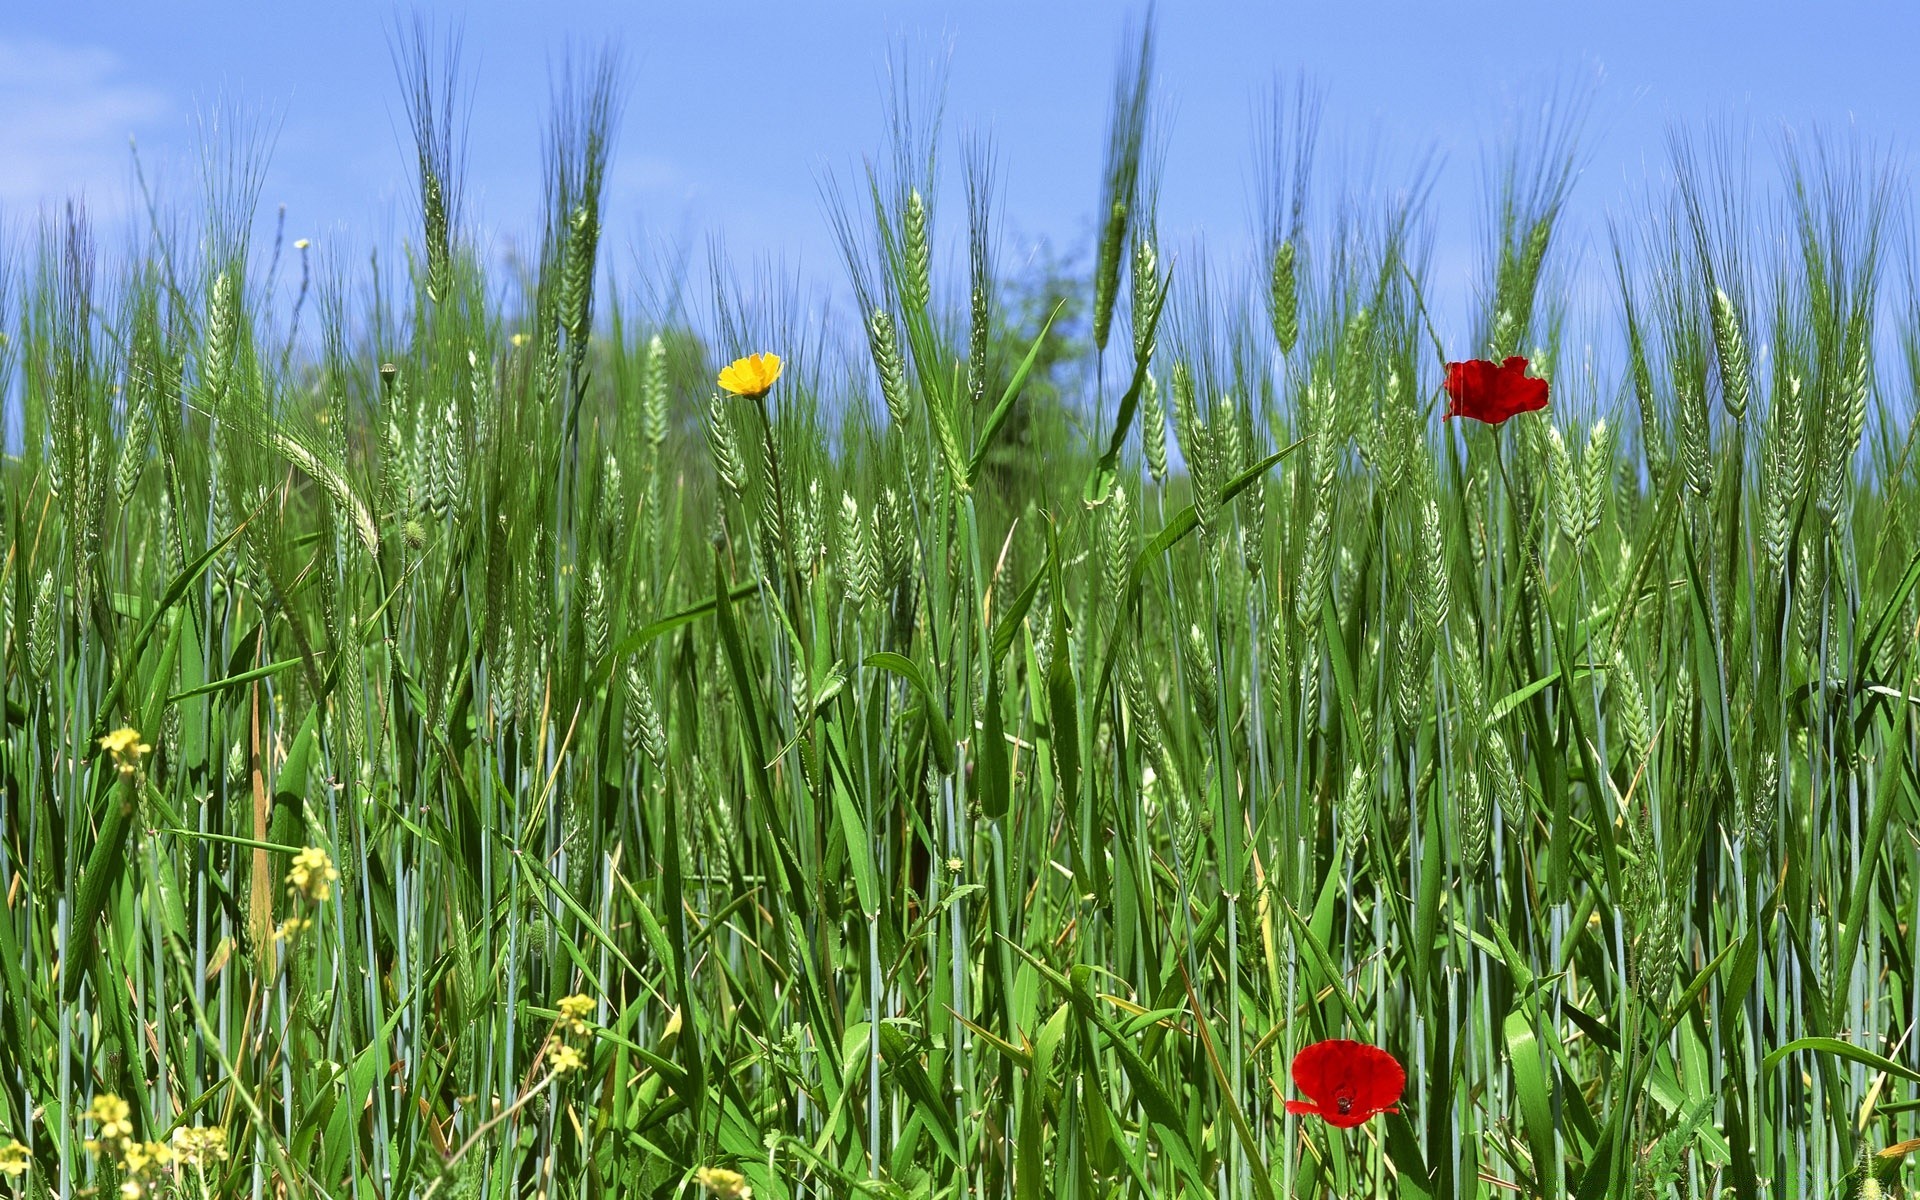 весна поле трава сенокос природа сельских цветок на открытом воздухе лето флора сельское хозяйство ферма рост поппи сезон пастбище сельской местности хорошую погоду солнце среды